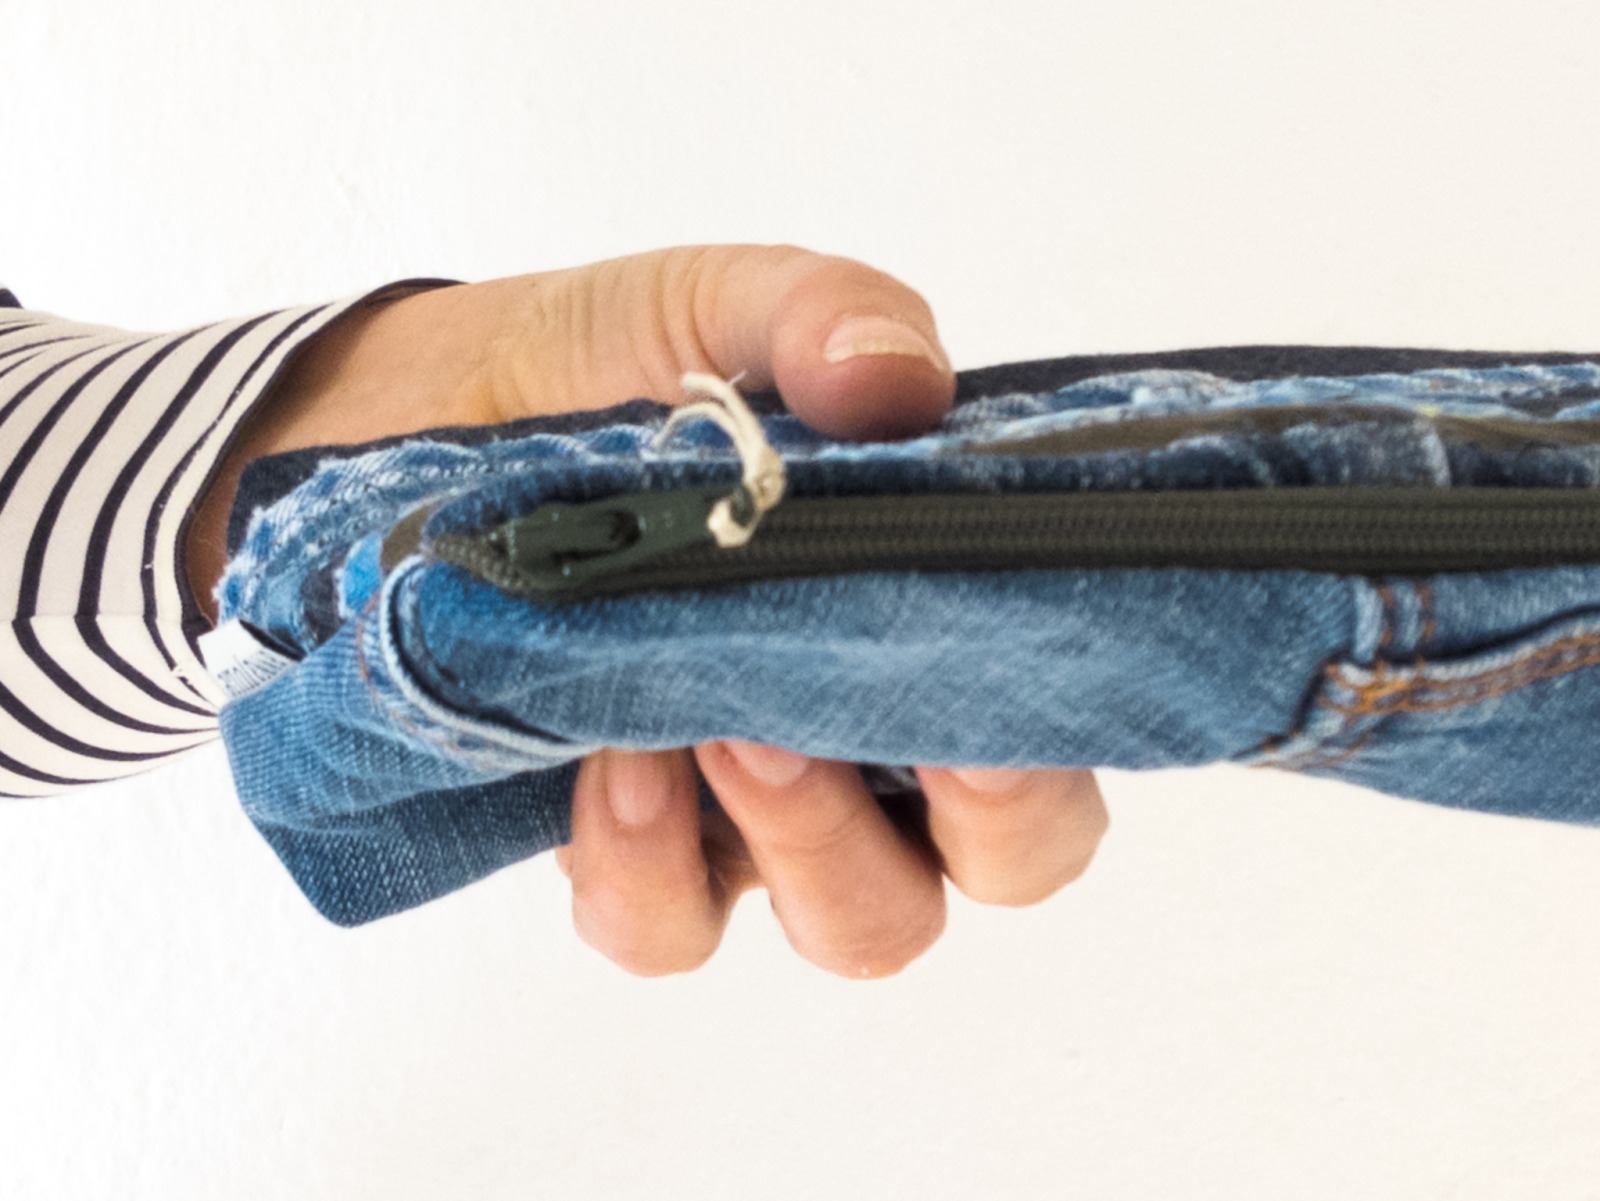 Stiftetasche | 25 cm/ 9,8 lang | Jeans | Upcycling | Reißverschluss | wandelndes Büro | Geschenk